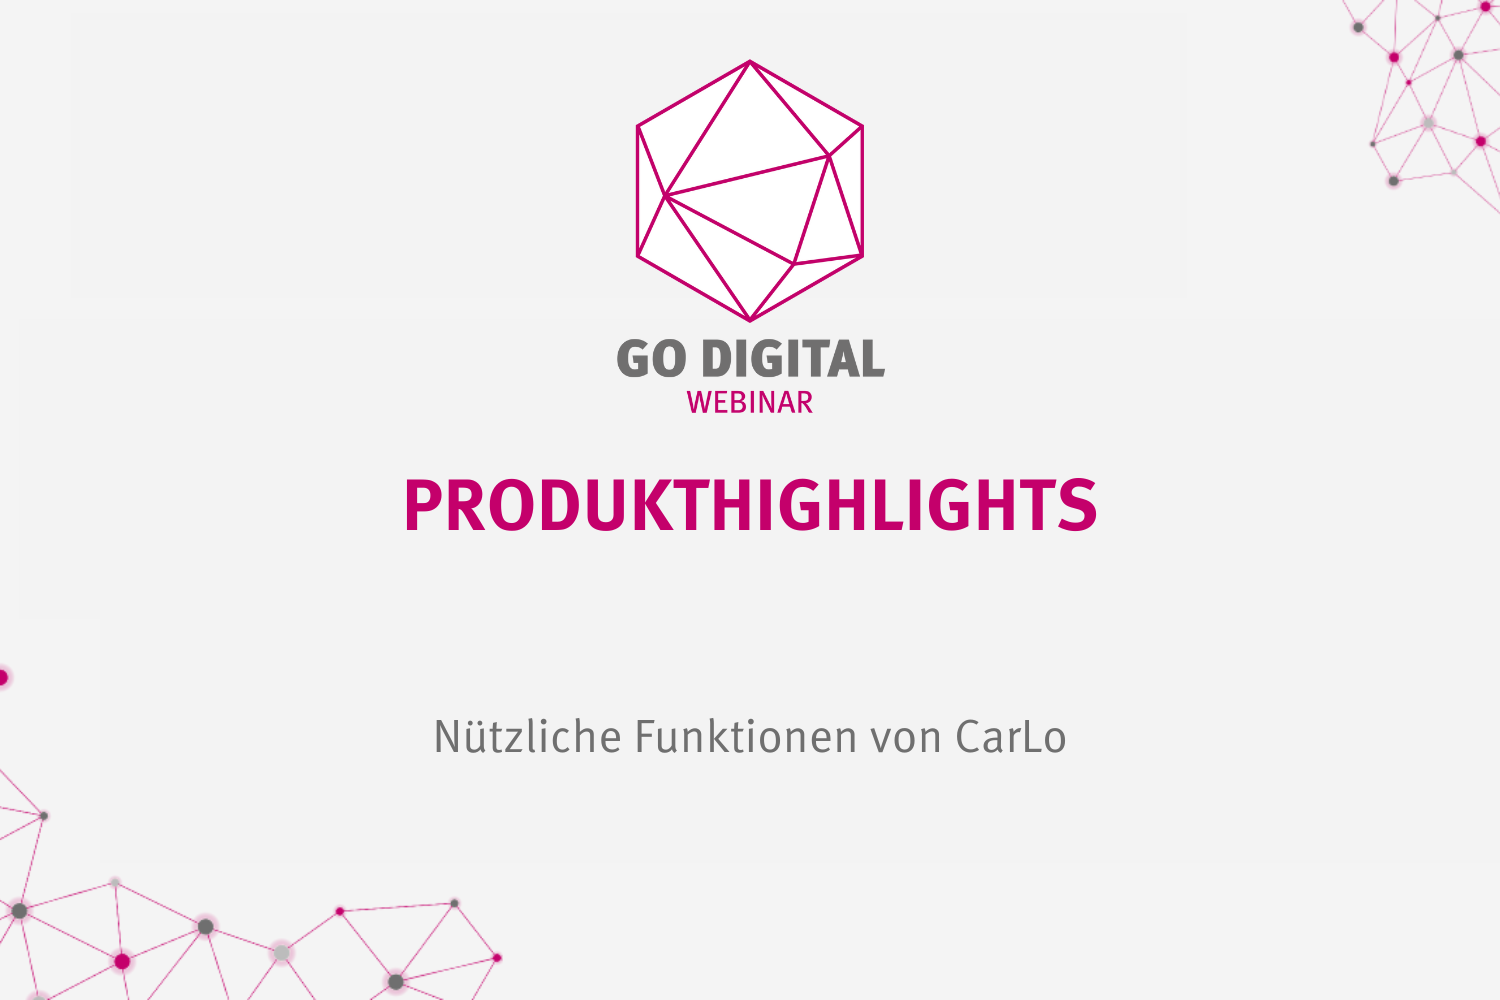 GO DIGITAL: Produkthighlights